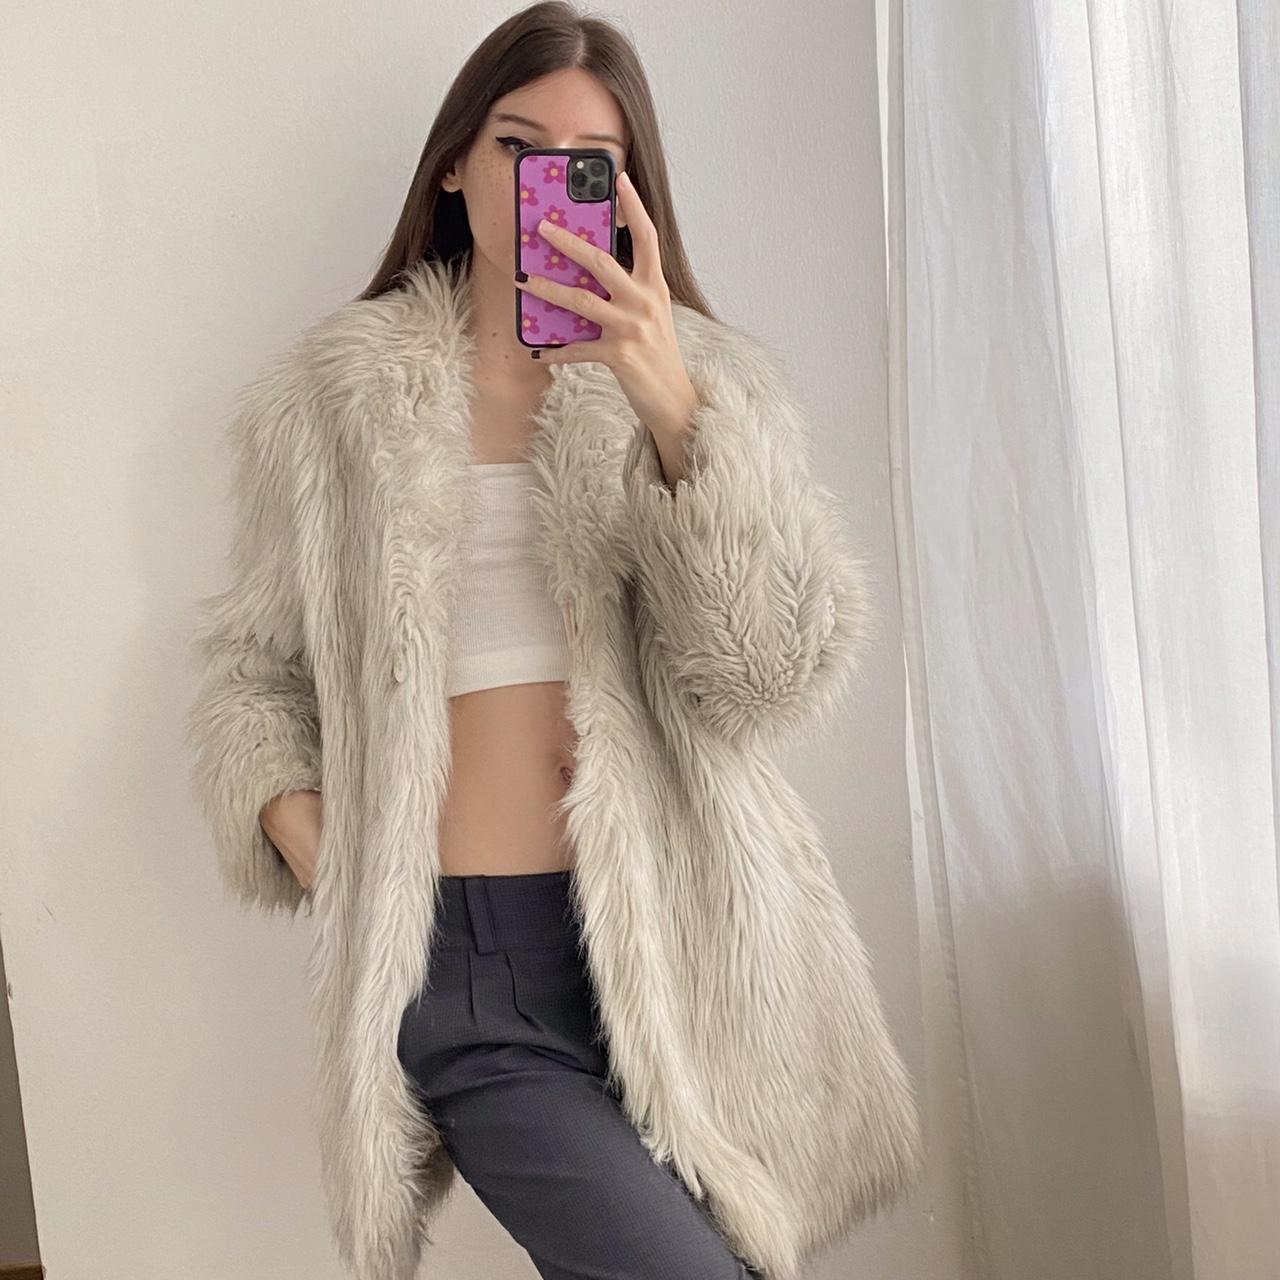 White vintage faux fur coat 💗 ️ size L. Shown on a... - Depop